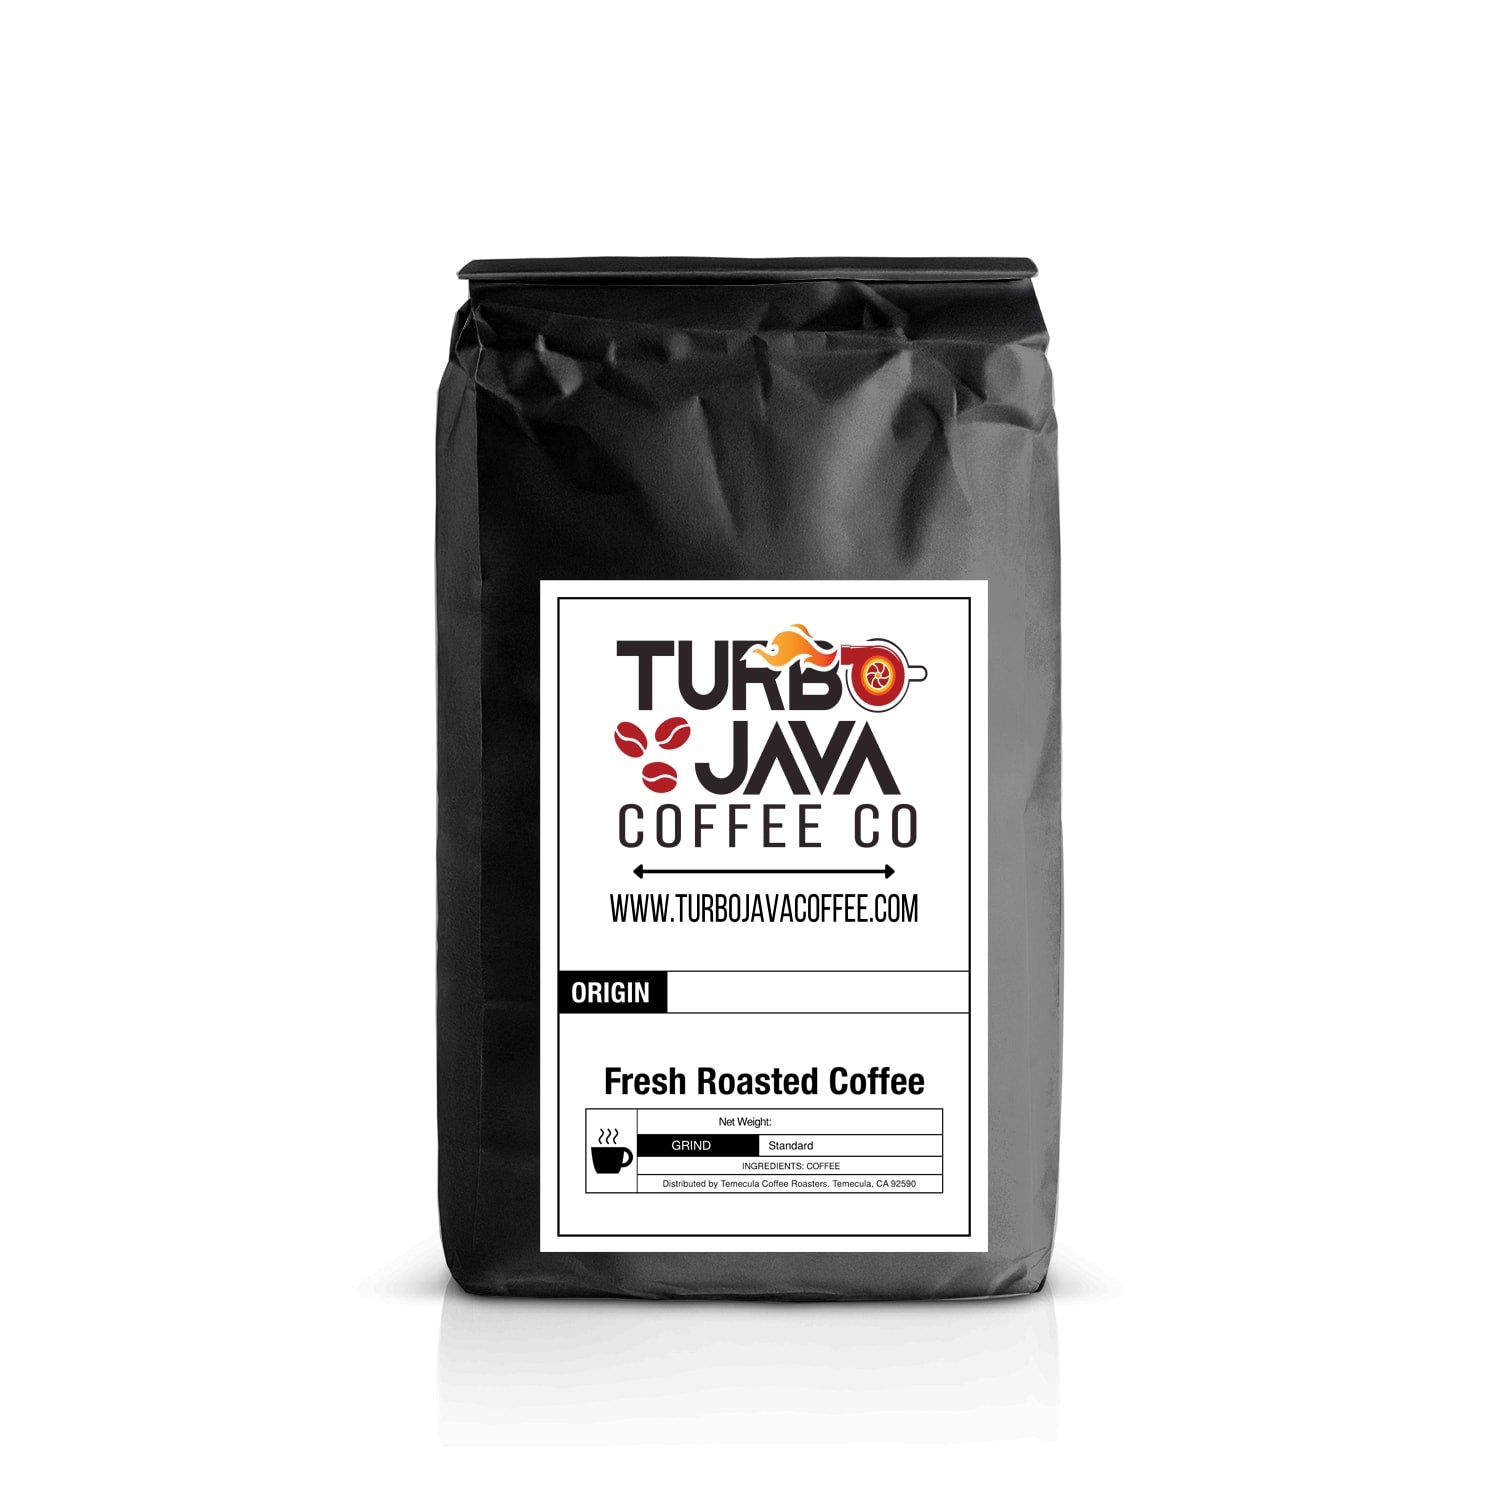 Turbo Java Coffee Co. Costa Rica Coffee 12 oz / Espresso,12 oz / Whole Bean,12 oz / Standard,12 oz / Coarse,1 lb / Espresso,1 lb / Whole Bean,1 lb / Standard,1 lb / Coarse,2 lb / Espresso,2 lb / Whole Bean,2 lb / Standard,2 lb / Coarse,5 lb / Espresso,5 lb / Whole Bean,5 lb / Standard,5 lb / Coarse,12 lb / Espresso,12 lb / Whole Bean,12 lb / Standard,12 lb / Coarse